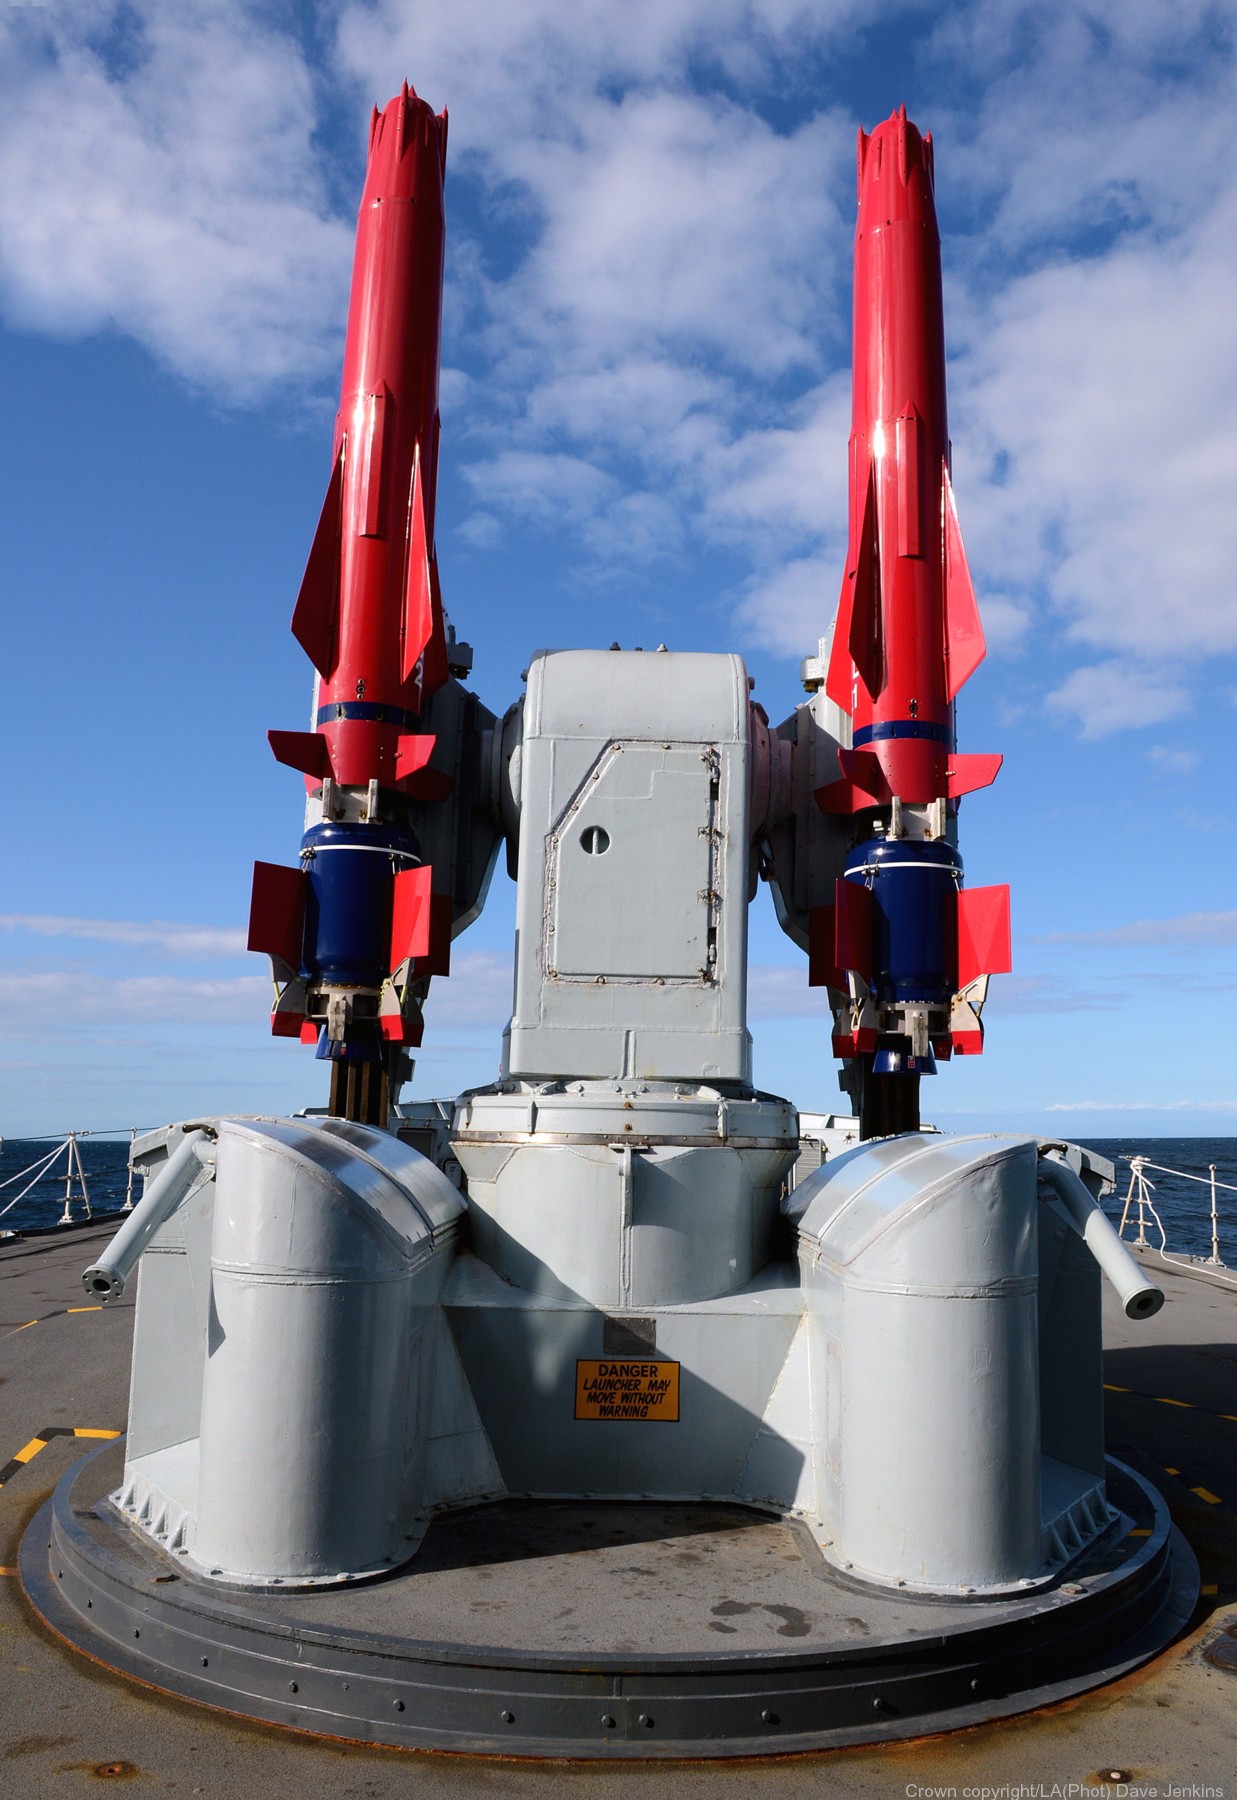 gws-30 sea dart missile sam sheffield class destroyer